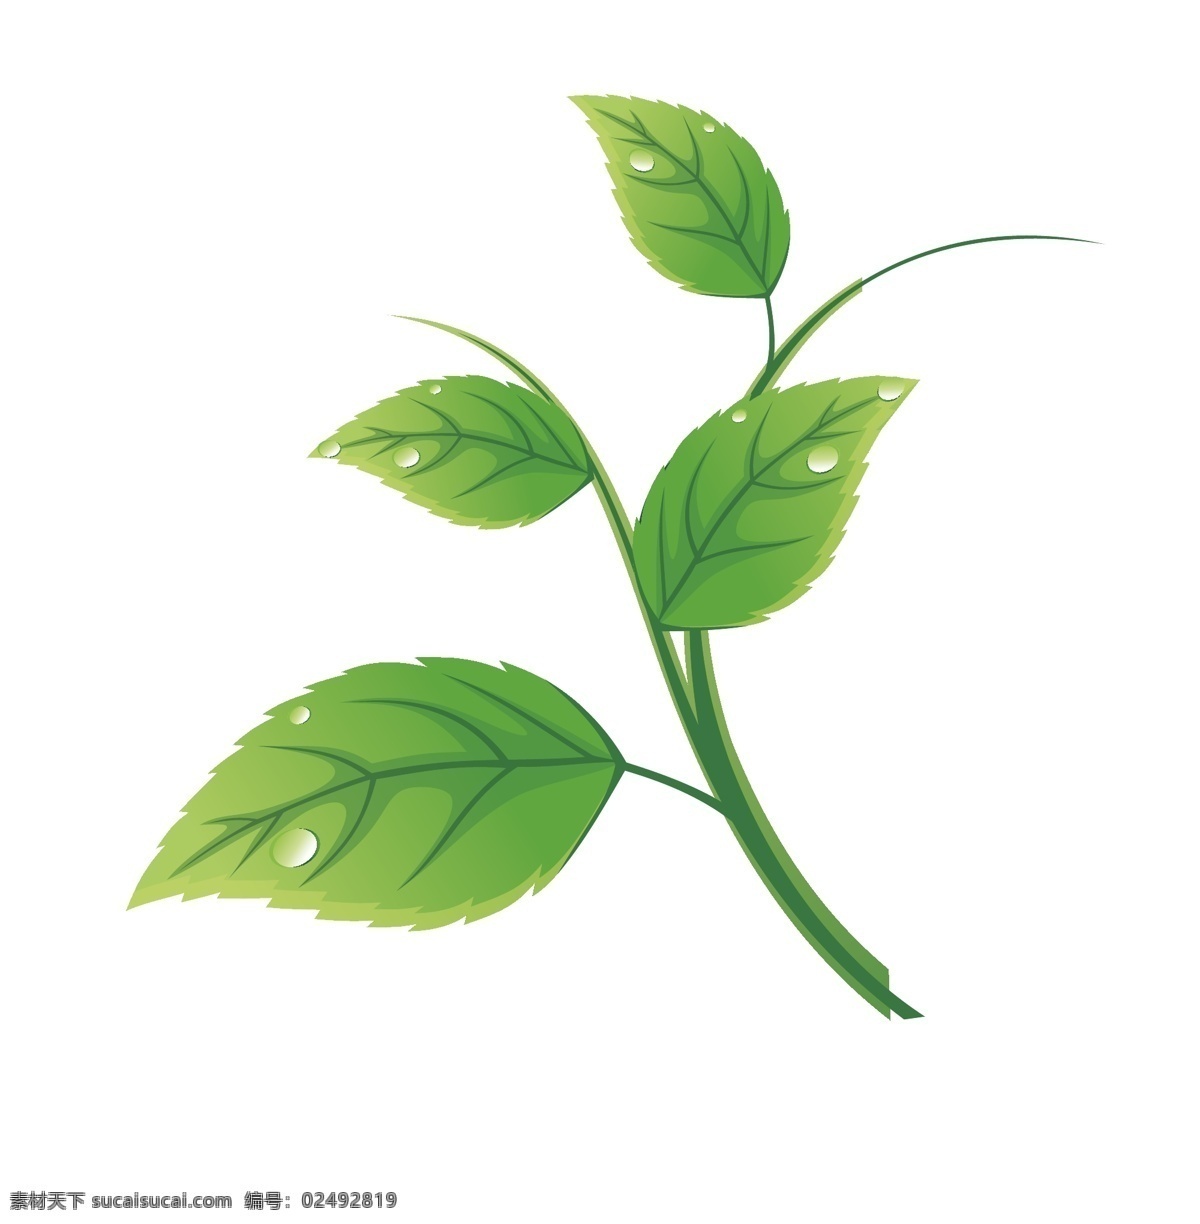 绿茶 绿叶矢量文件 绿叶 树叶 叶子 矢量 可编辑 生物世界 树木树叶